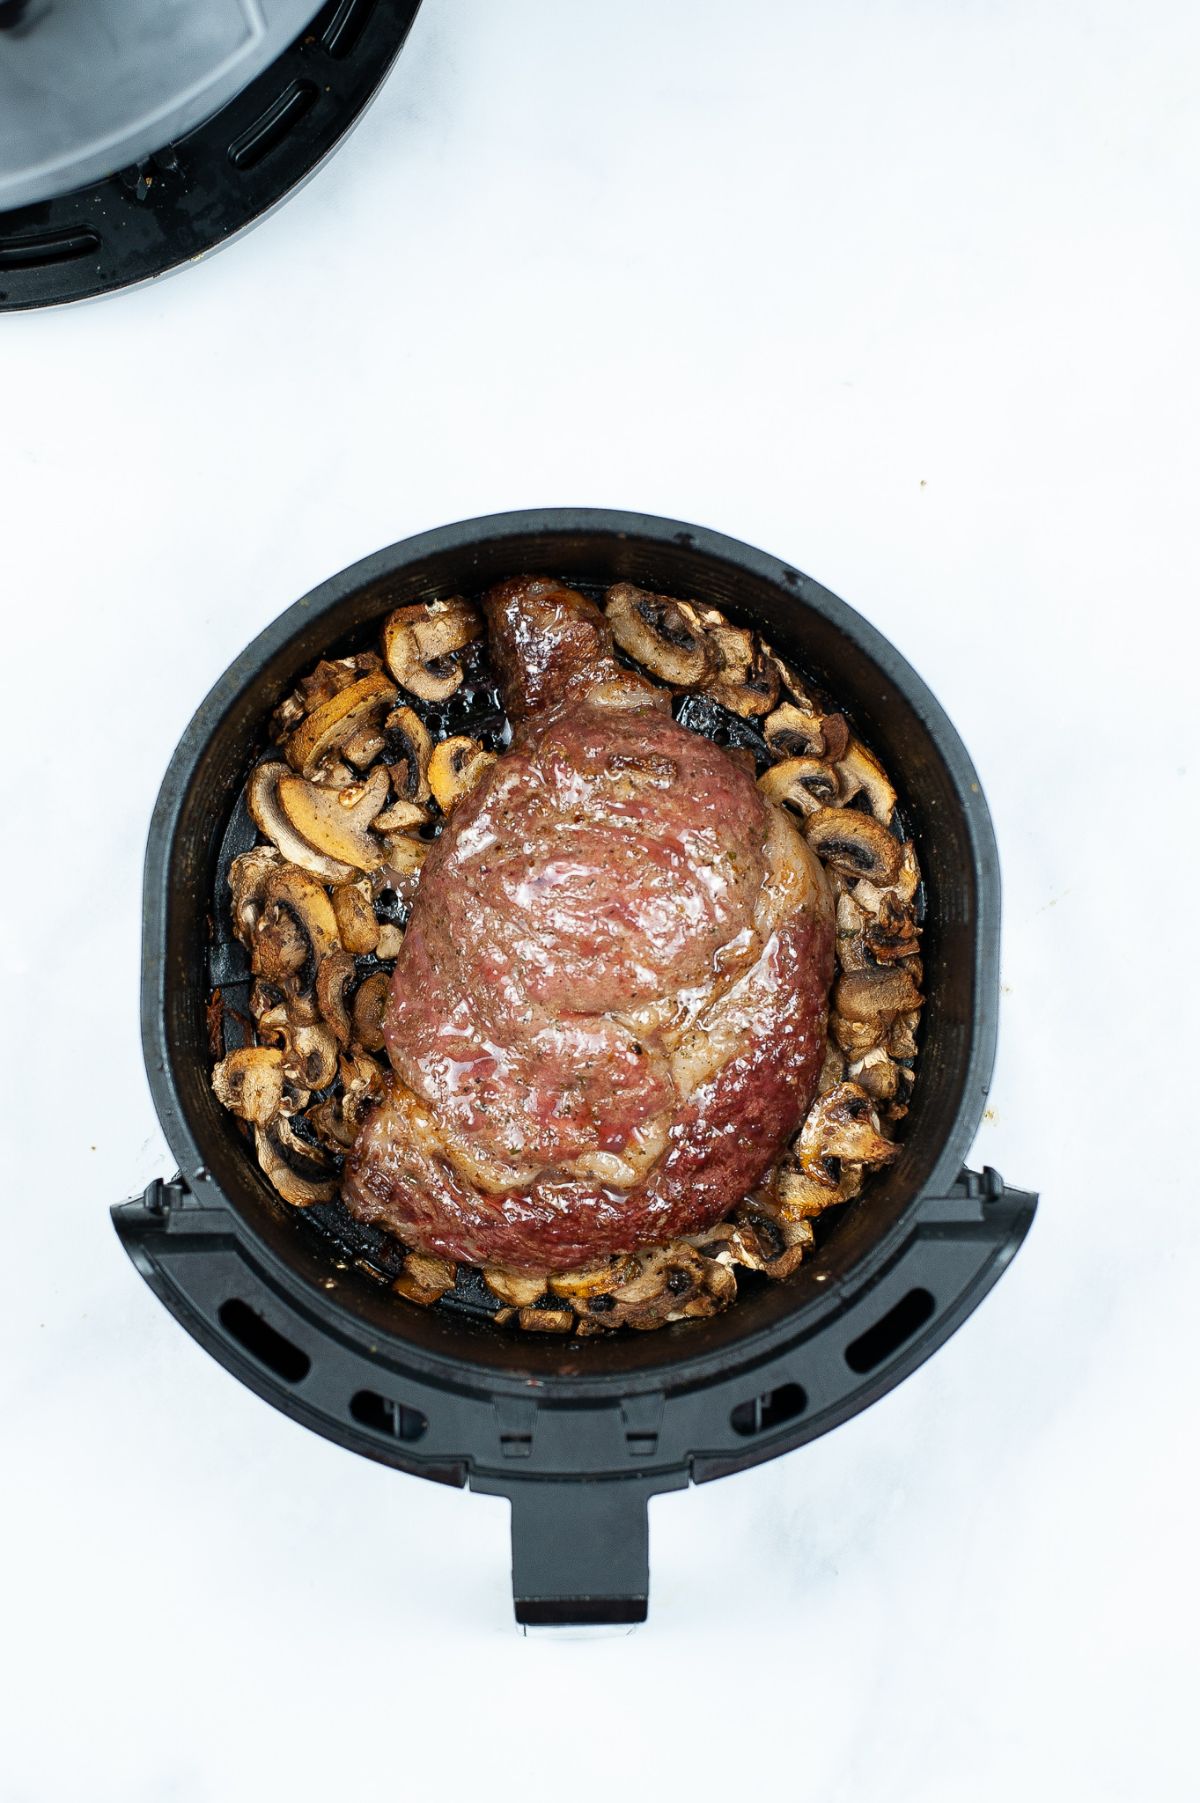 Steak and mushrooms in an air fryer basket.